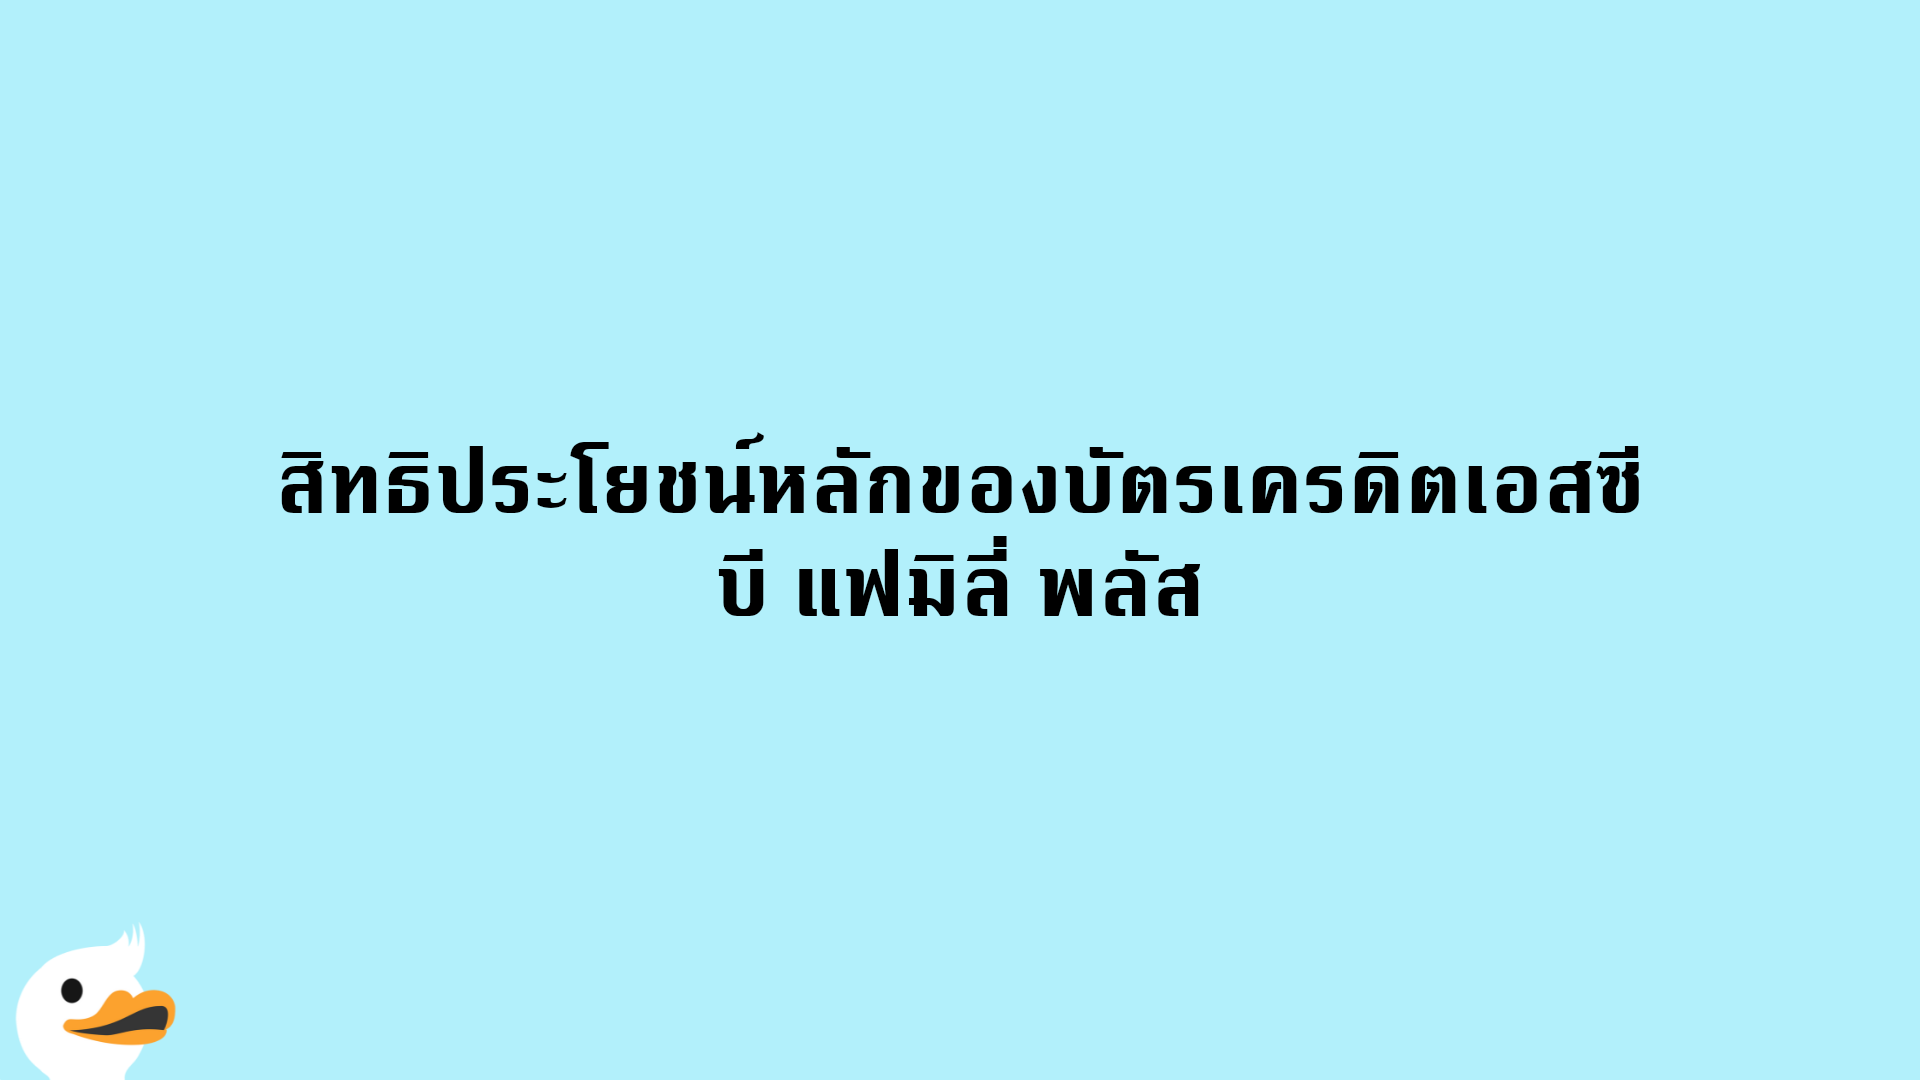 บัตรเครดิตเอสซีบี แฟมิลี่ พลัส | ธนาคารไทยพาณิชย์ | Moneyduck Thailand